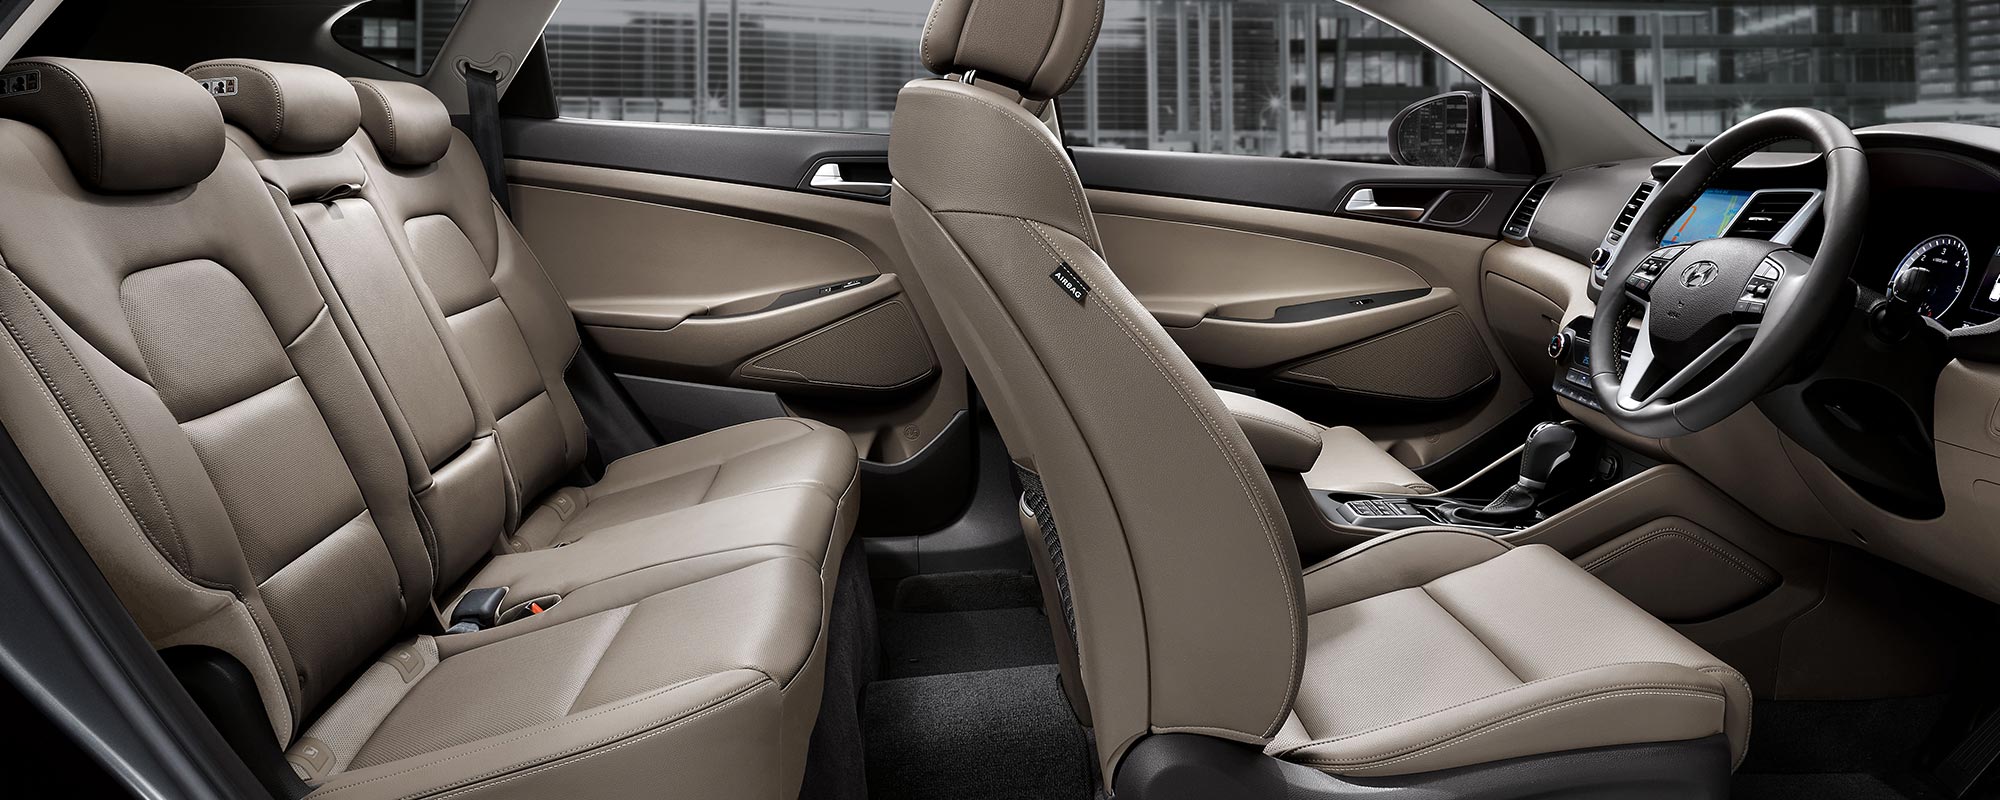 Hyundai Tucson Highlander Diesel interior seat view